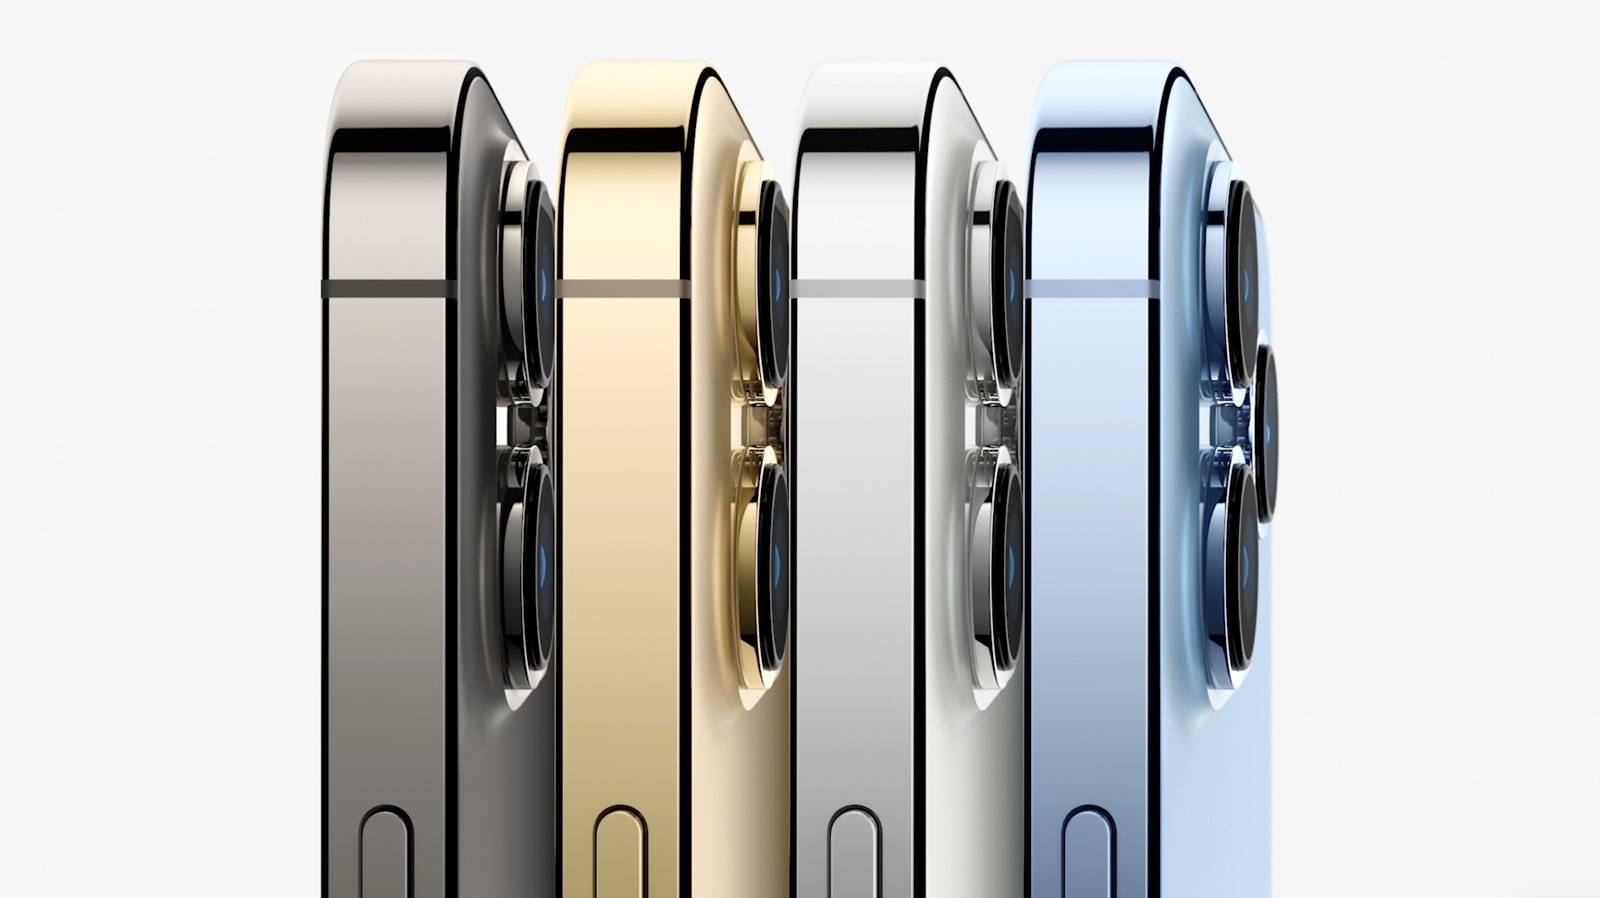 Размеры батарей iPhone 13 раскрыты для всех четырех моделей